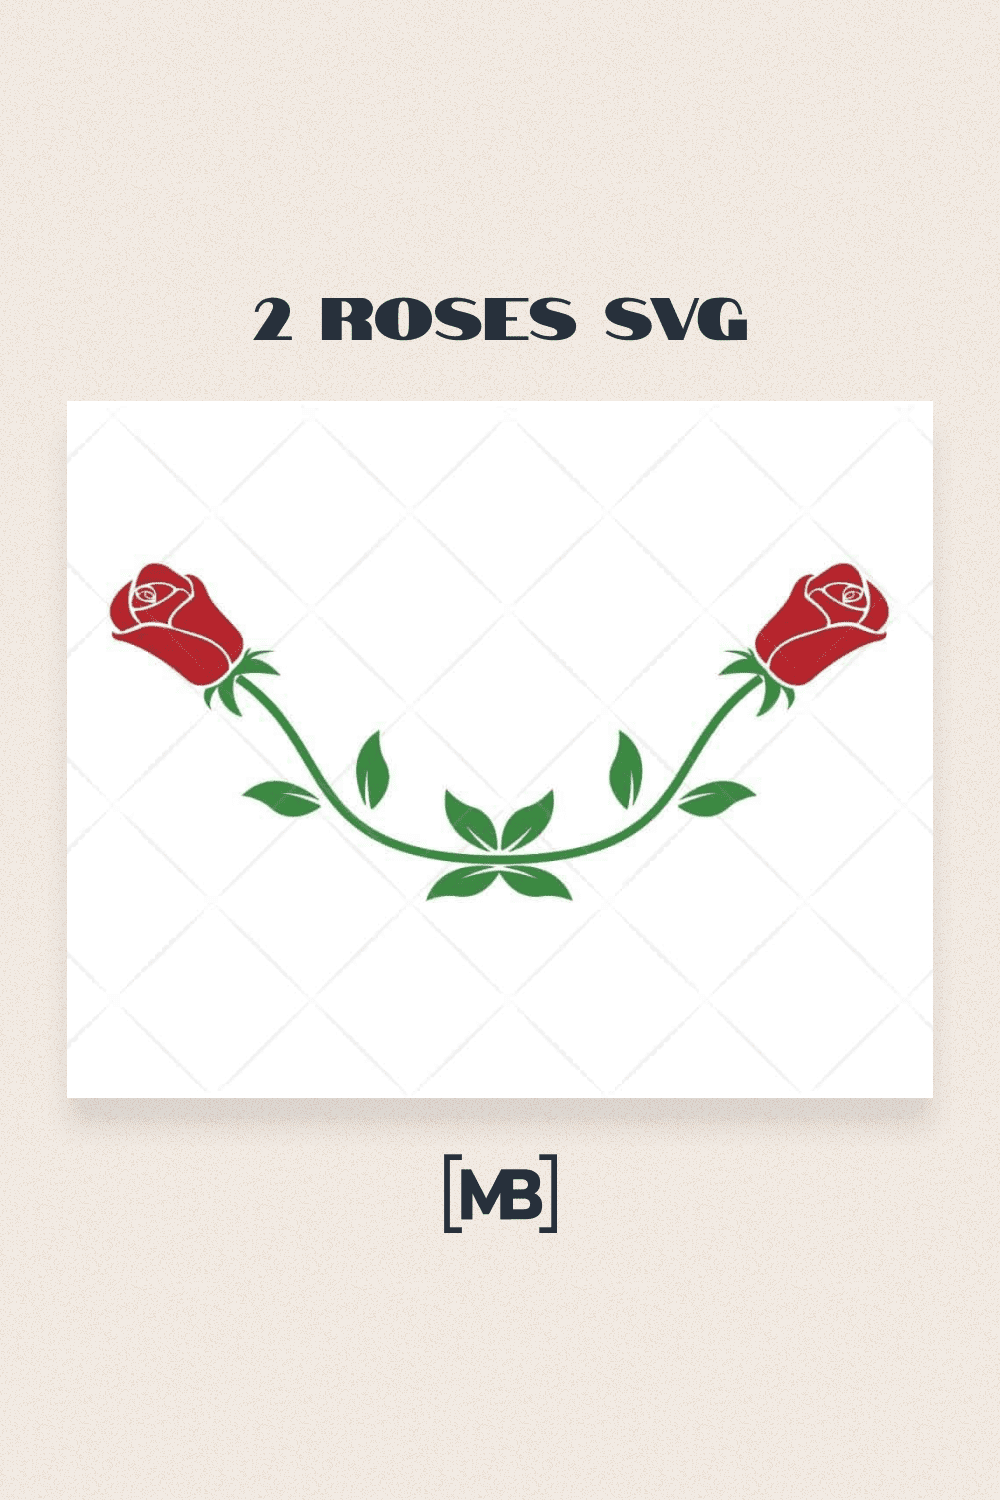 2 roses SVG.